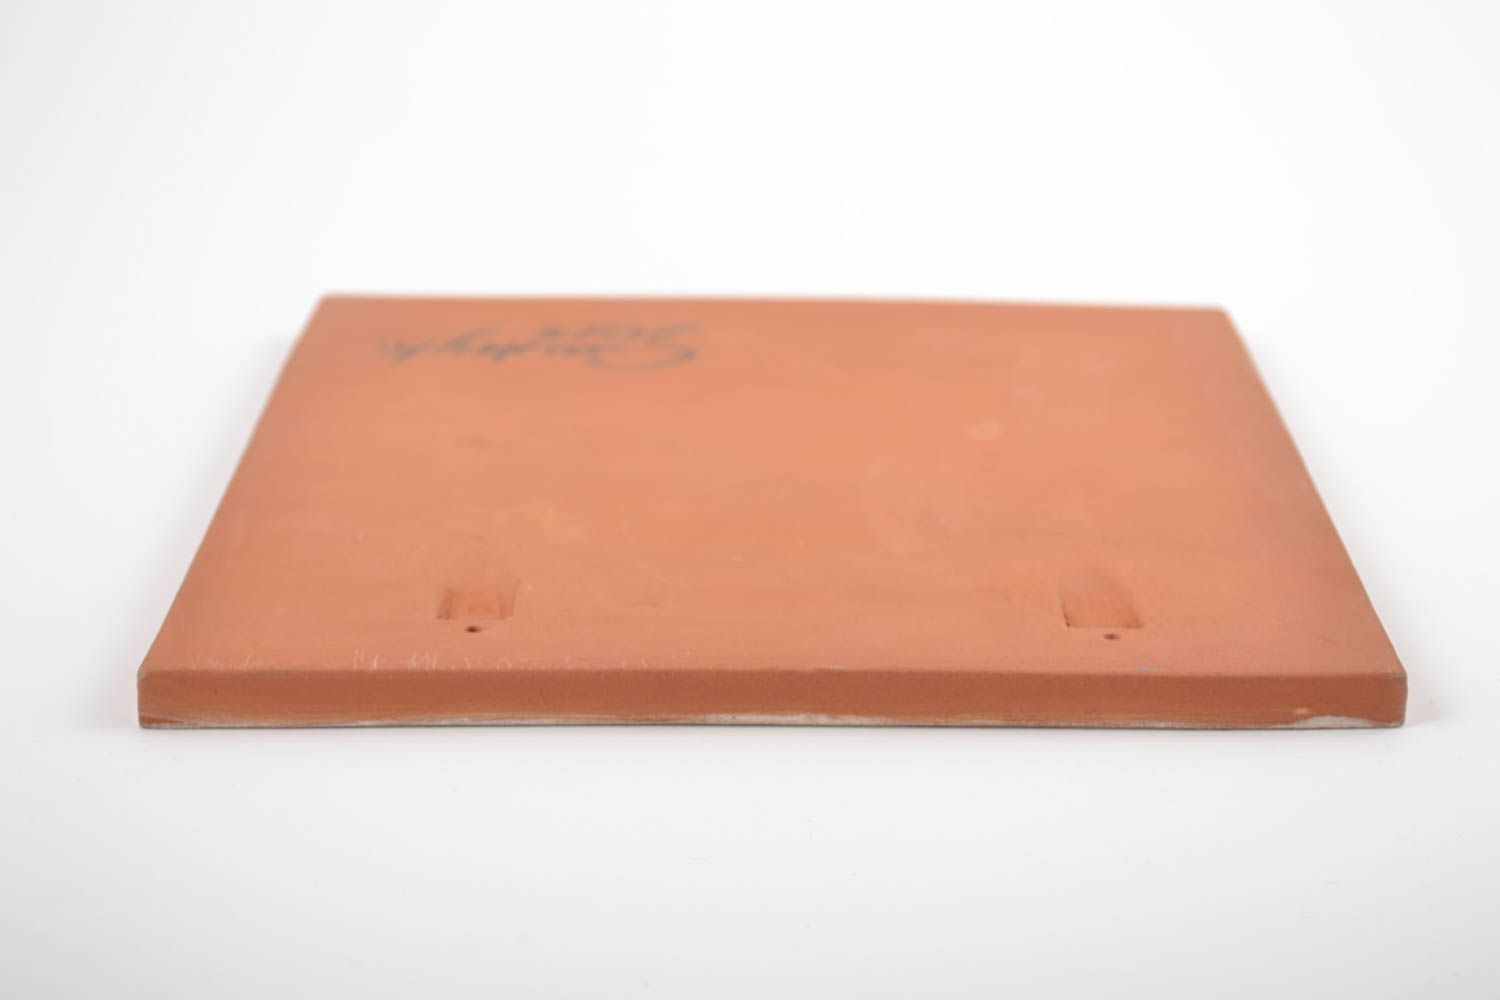 Керамическая плитка прямоугольная расписанная ангобами хэнд мэйд с подсолнухом фото 5